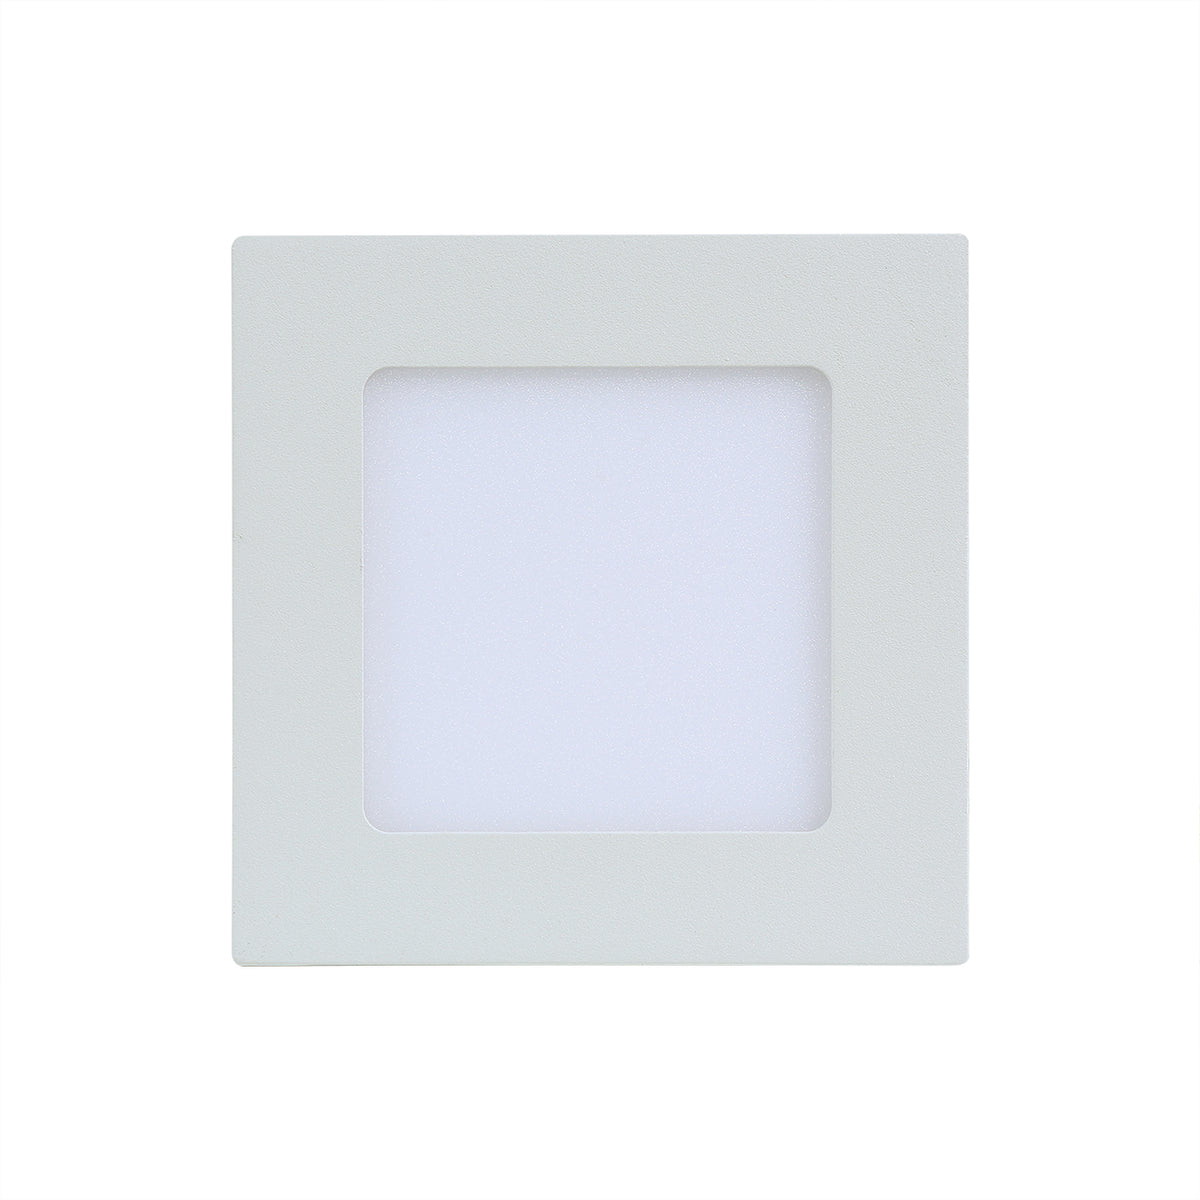 Luminária LED Embutir 6W Quadrada Multivolt Luz Amarela 3000k 12x12CM - Altaluce